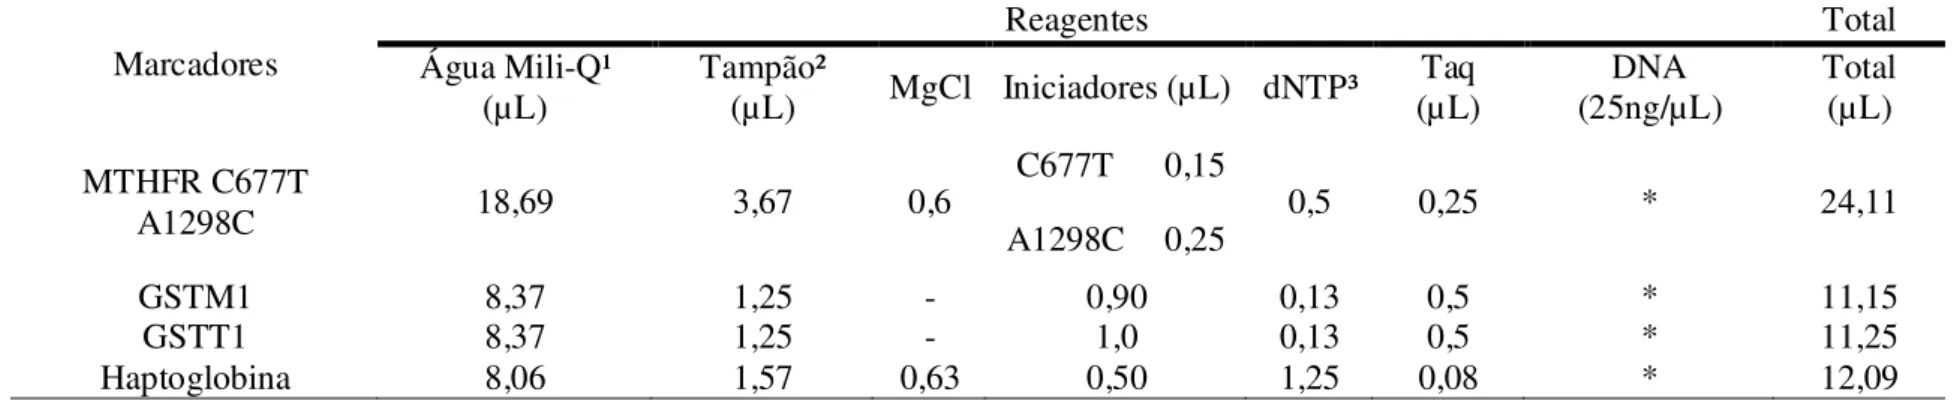 Tabela 1: Condições da mistura para reação de PCR para os genes estudados.  Marcadores  Reagentes  Total  Água Mili-Q¹  (µL)  Tampão² (µL)  MgCl  Iniciadores (µL)  dNTP³  Taq  (µL)  DNA  (25ng/µL)  Total (µL)  MTHFR C677T  A1298C  18,69  3,67  0,6  C677T  